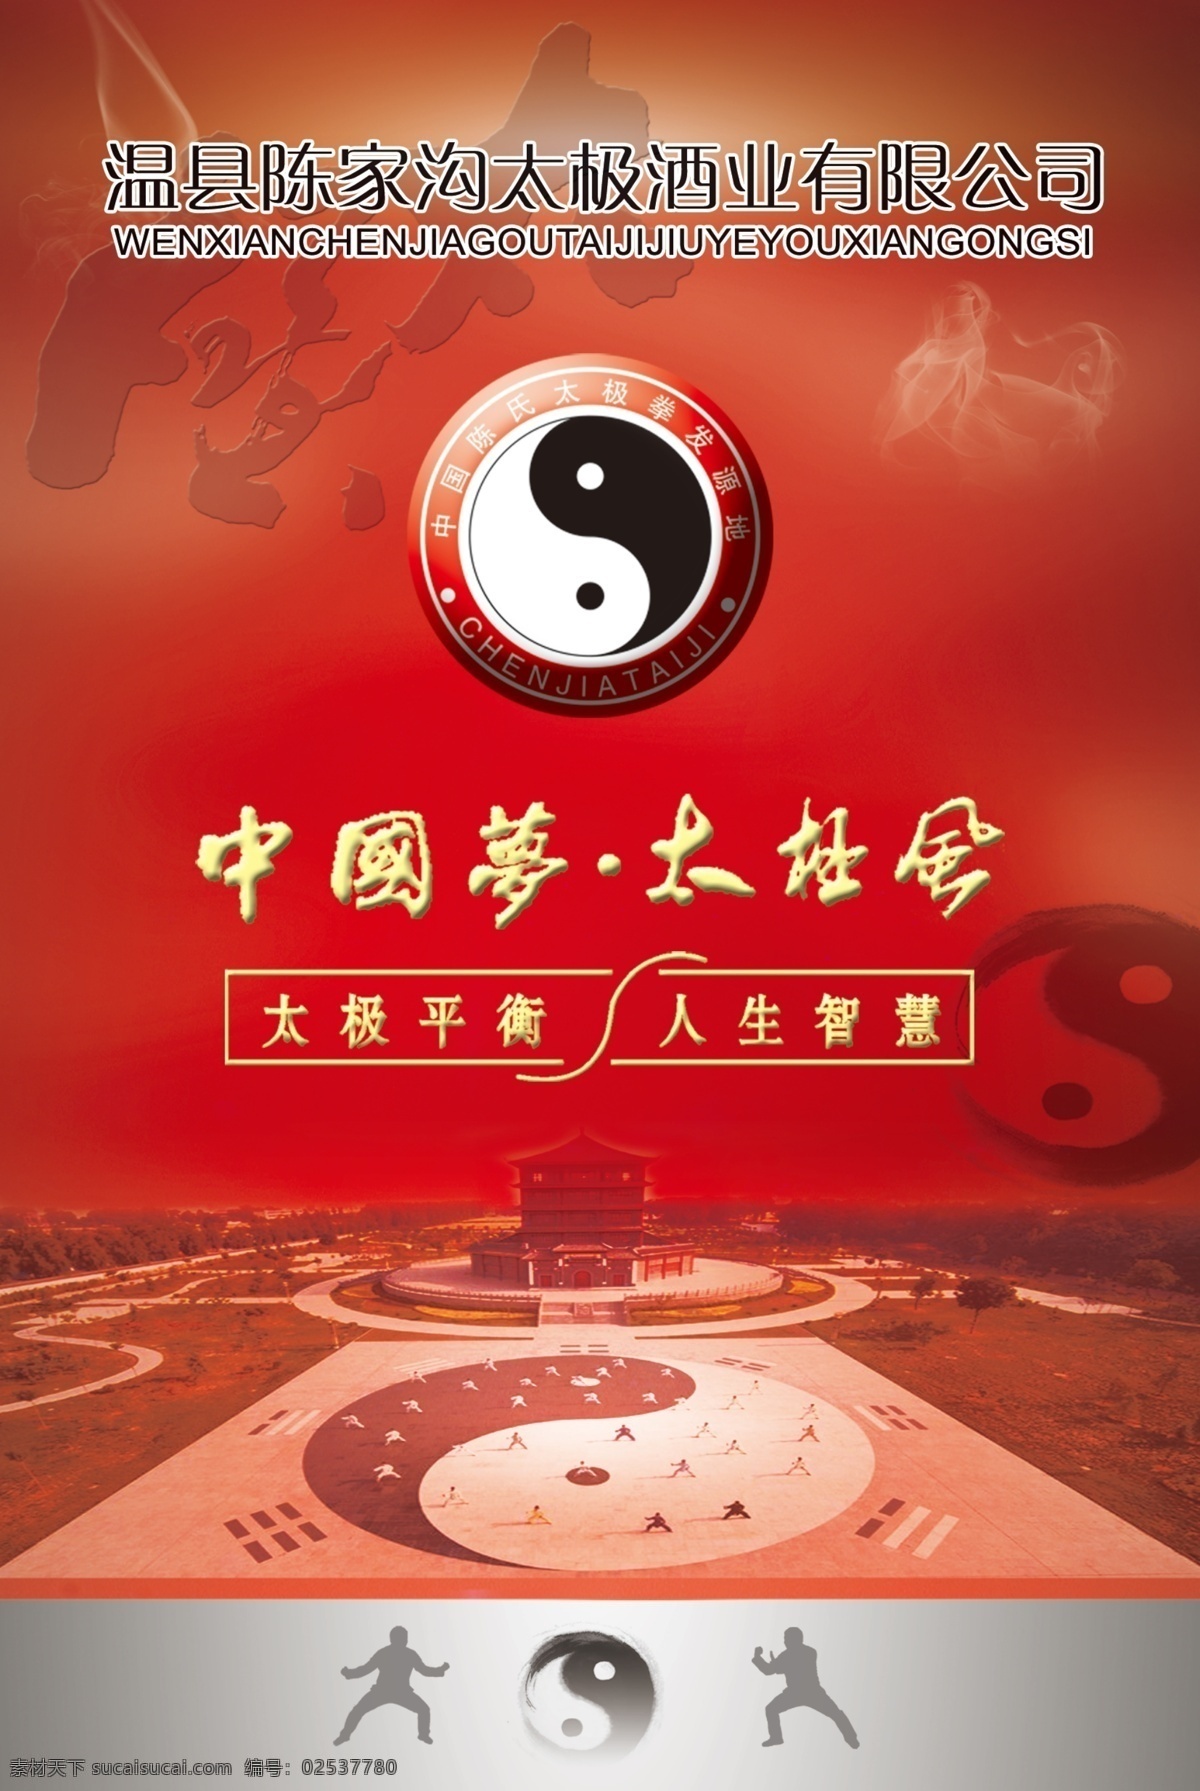 太极就业海报 个性设计 中国梦太极风 太极八卦图 红色背景